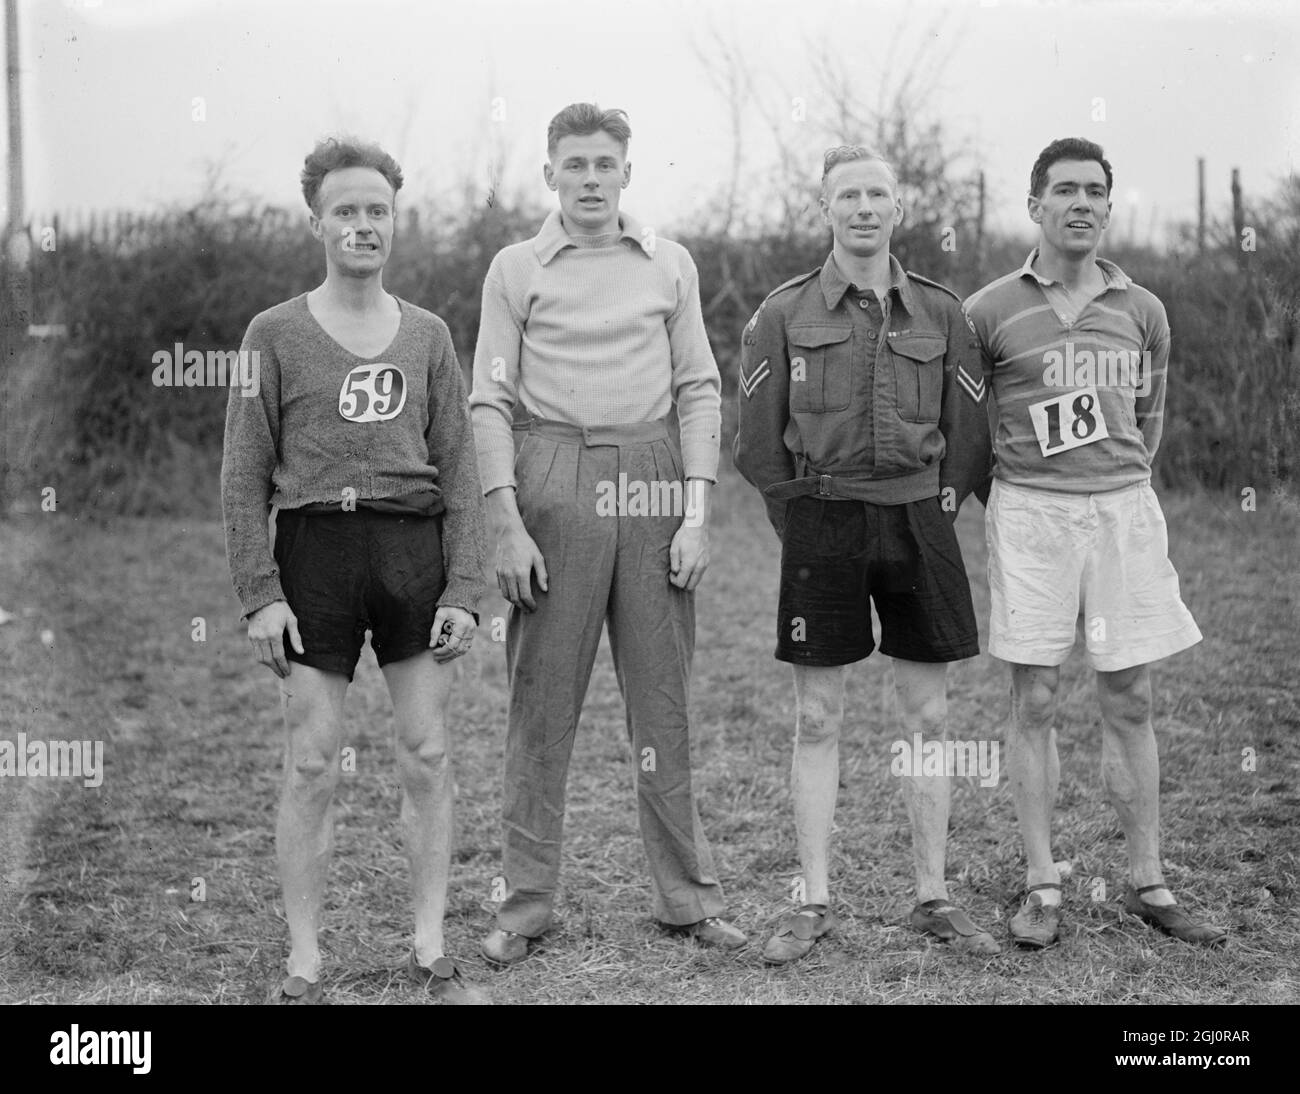 Cross Country Runners De izquierda a derecha -: R.G.G.G.G.G.G.G.E. , D.J..MAIN,G.L.E., J.R.E., J.R.P., A.R.P., A.R.P., A.R.P., A.P., A.P., A.C., A.C.. 10 de septiembre de 1940 Foto de stock